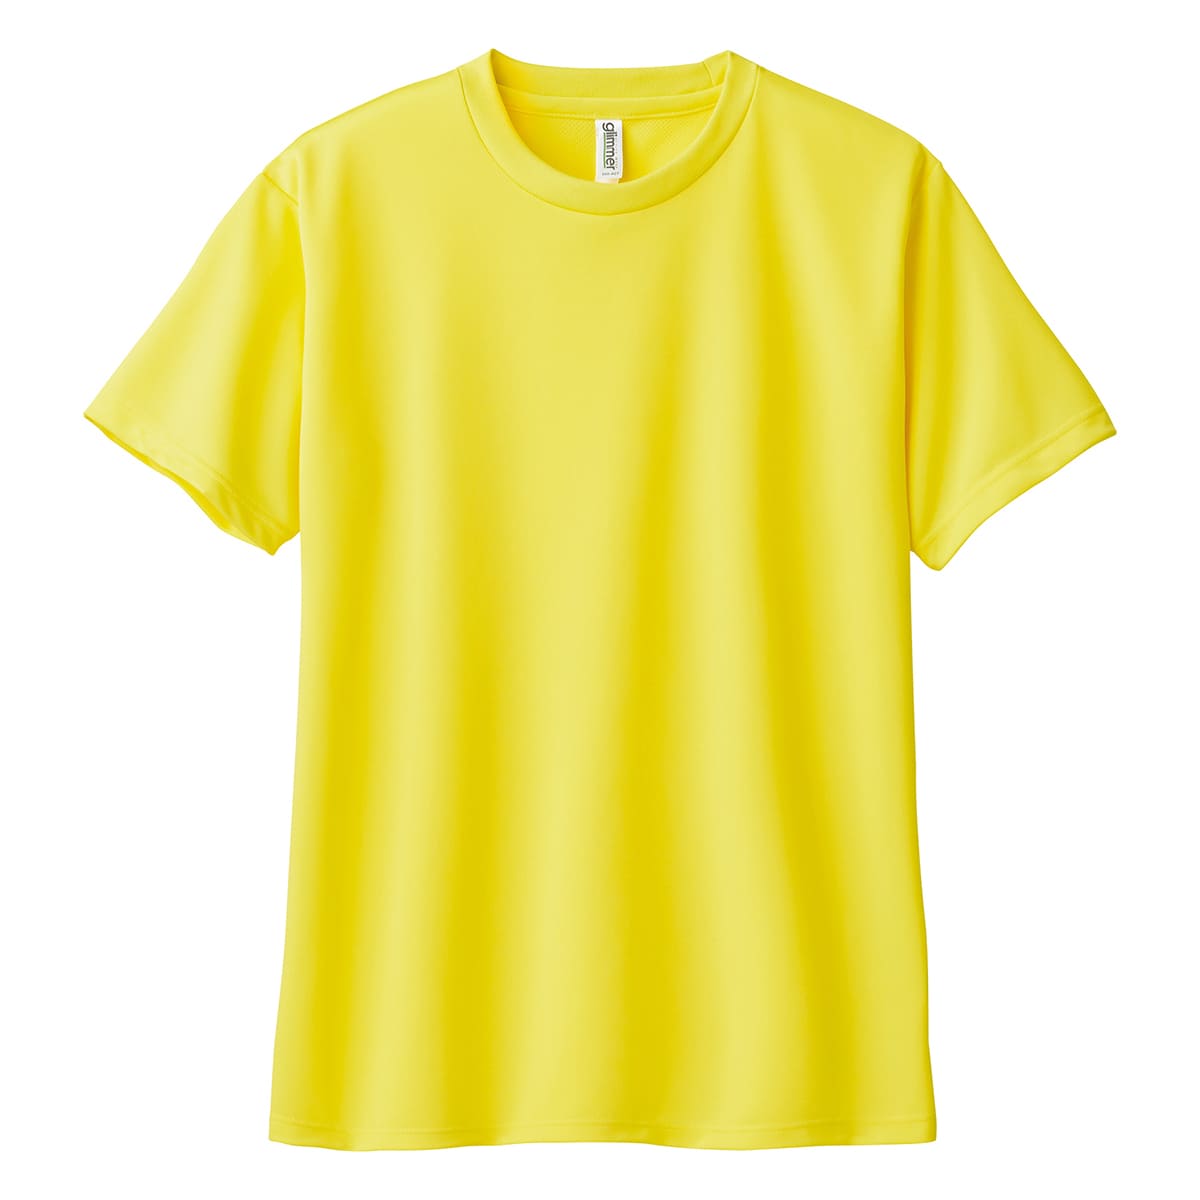 速乾 tシャツ レディース glimmer グリマー 4.4オンス ドライ Tシャツ 00300-A...